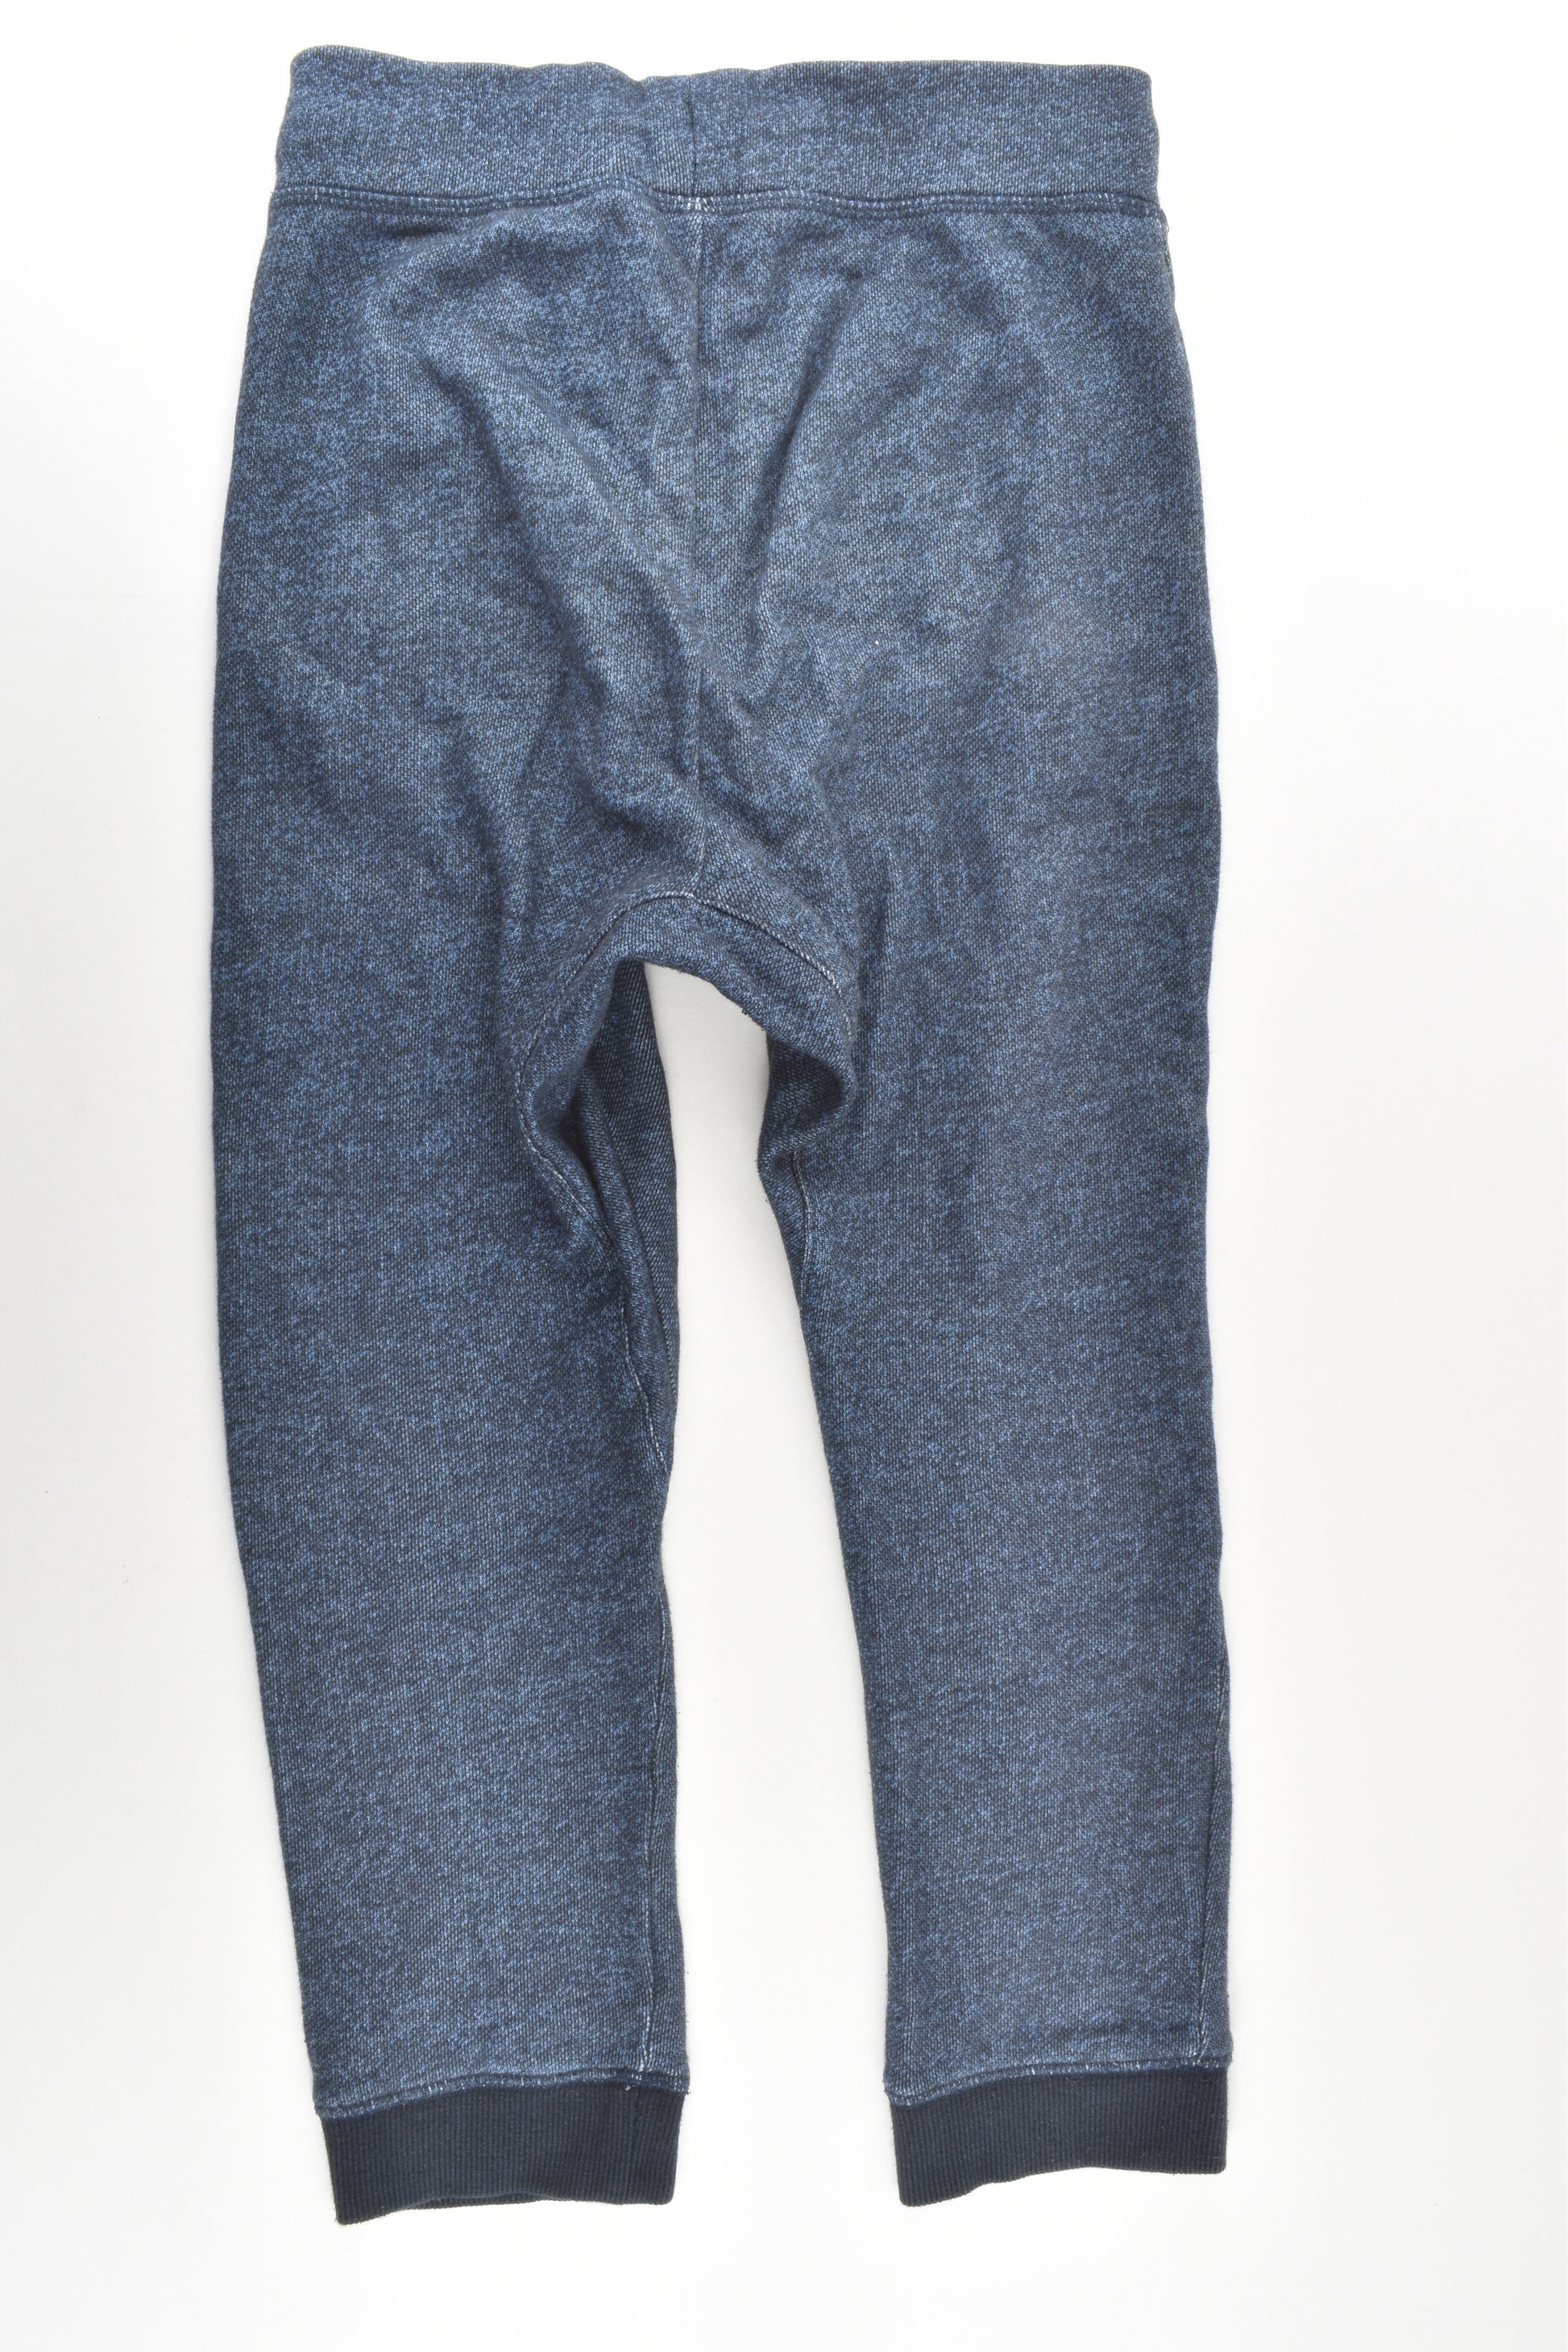 H&M Size 9 (134 cm) Baggy Track Pants